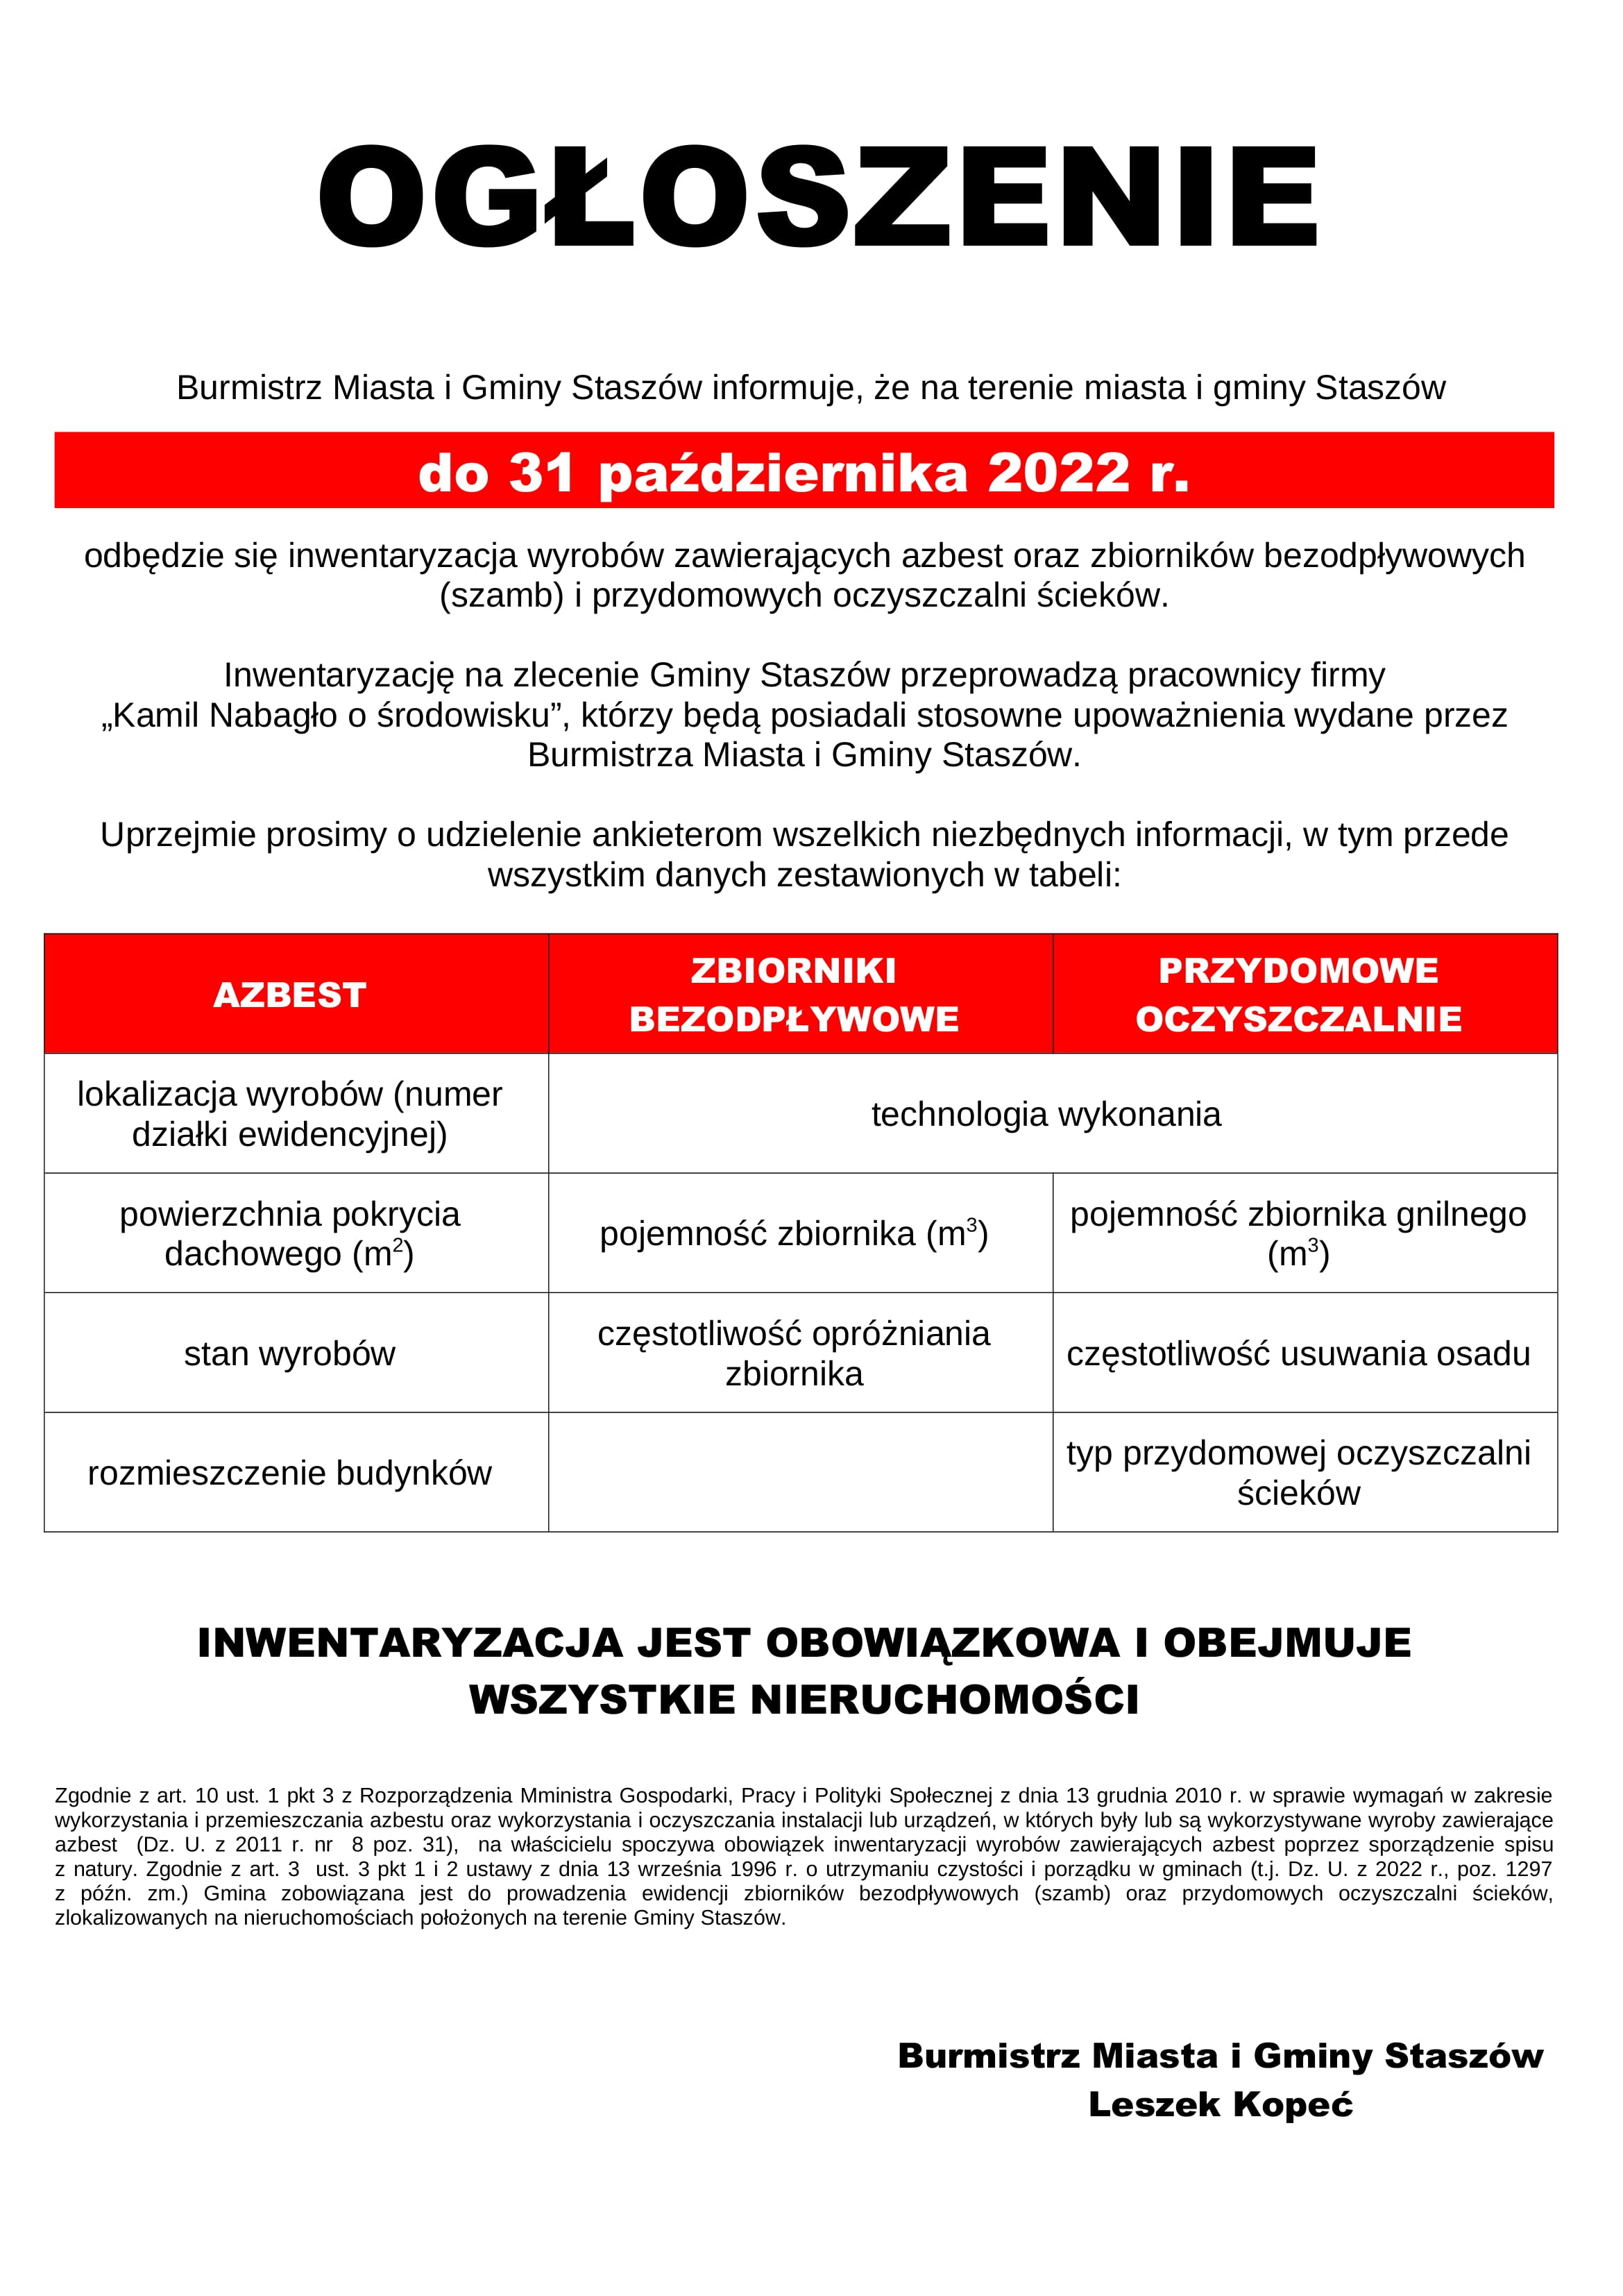 Burmistrz Miasta i Gminy Staszów informuje, że na terenie miasta i gminy Staszów do 31 października 2022 r. odbędzie się inwentaryzacja wyrobów zawierających azbest oraz zbiorników bezodpływowych (szamb) i przydomowych oczyszczalni ścieków.